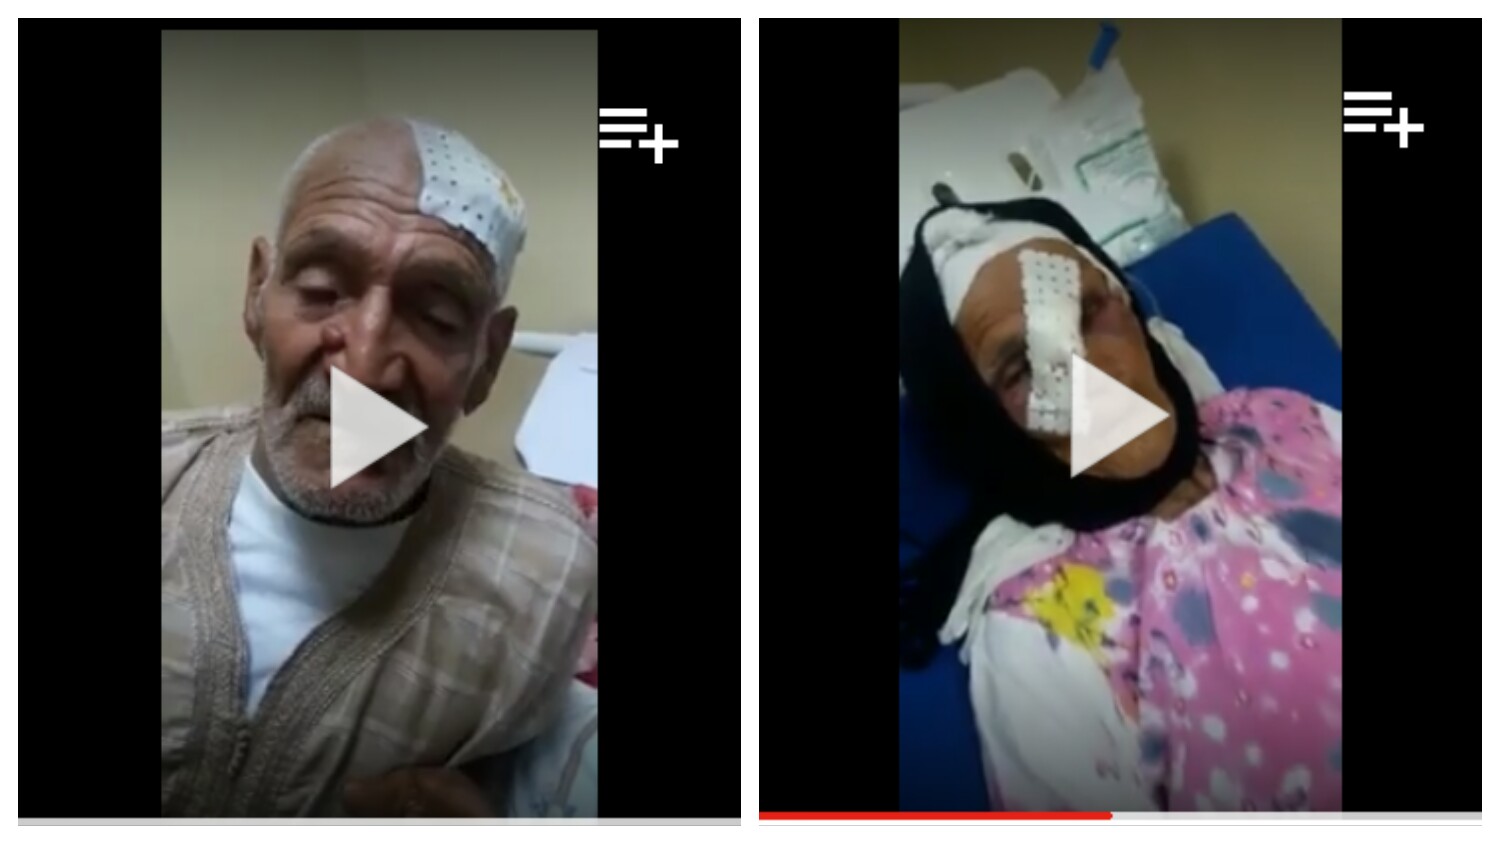 واش سيبة هدي… اصابة مسن وزوجته المسنة بجروح خطيرة من طرف أشخاص وهذه رسالته المؤثرة =فيديو=